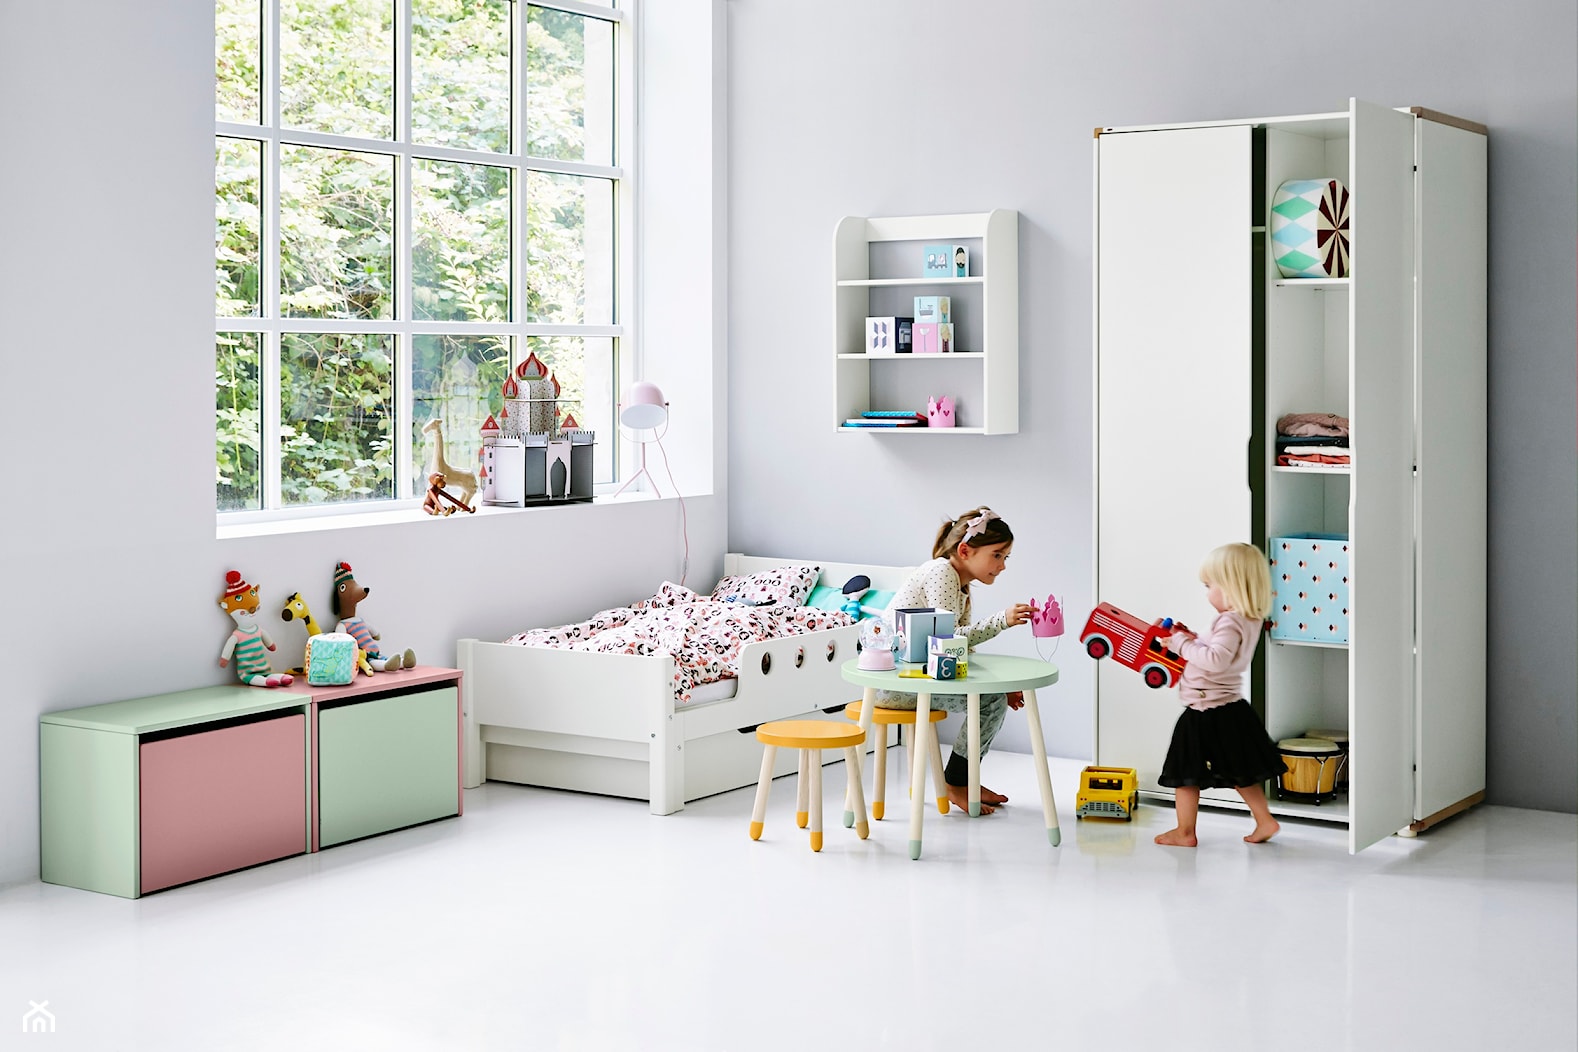 Mały pokój dziecka - Pokój dziecka, styl skandynawski - zdjęcie od Flexa - Homebook